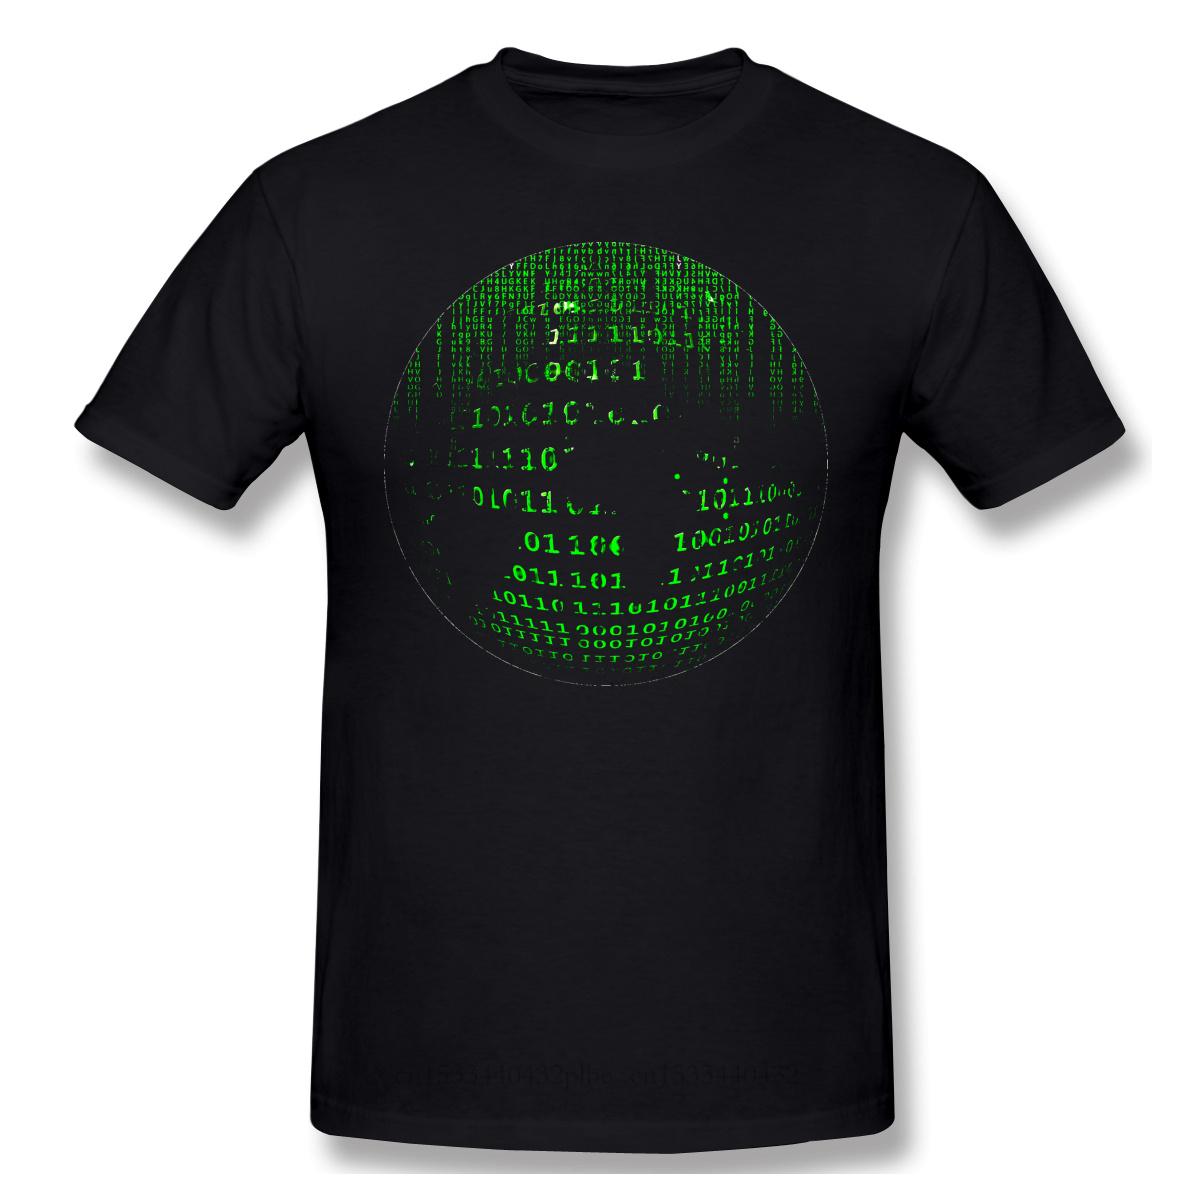 Изображение товара: The Matrix Neo научно-Фантастические футболки для экшн-фильма для мужчин с матрицей Mo Мужская футболка забавная хлопковая Футболка с круглым вырезом 2020